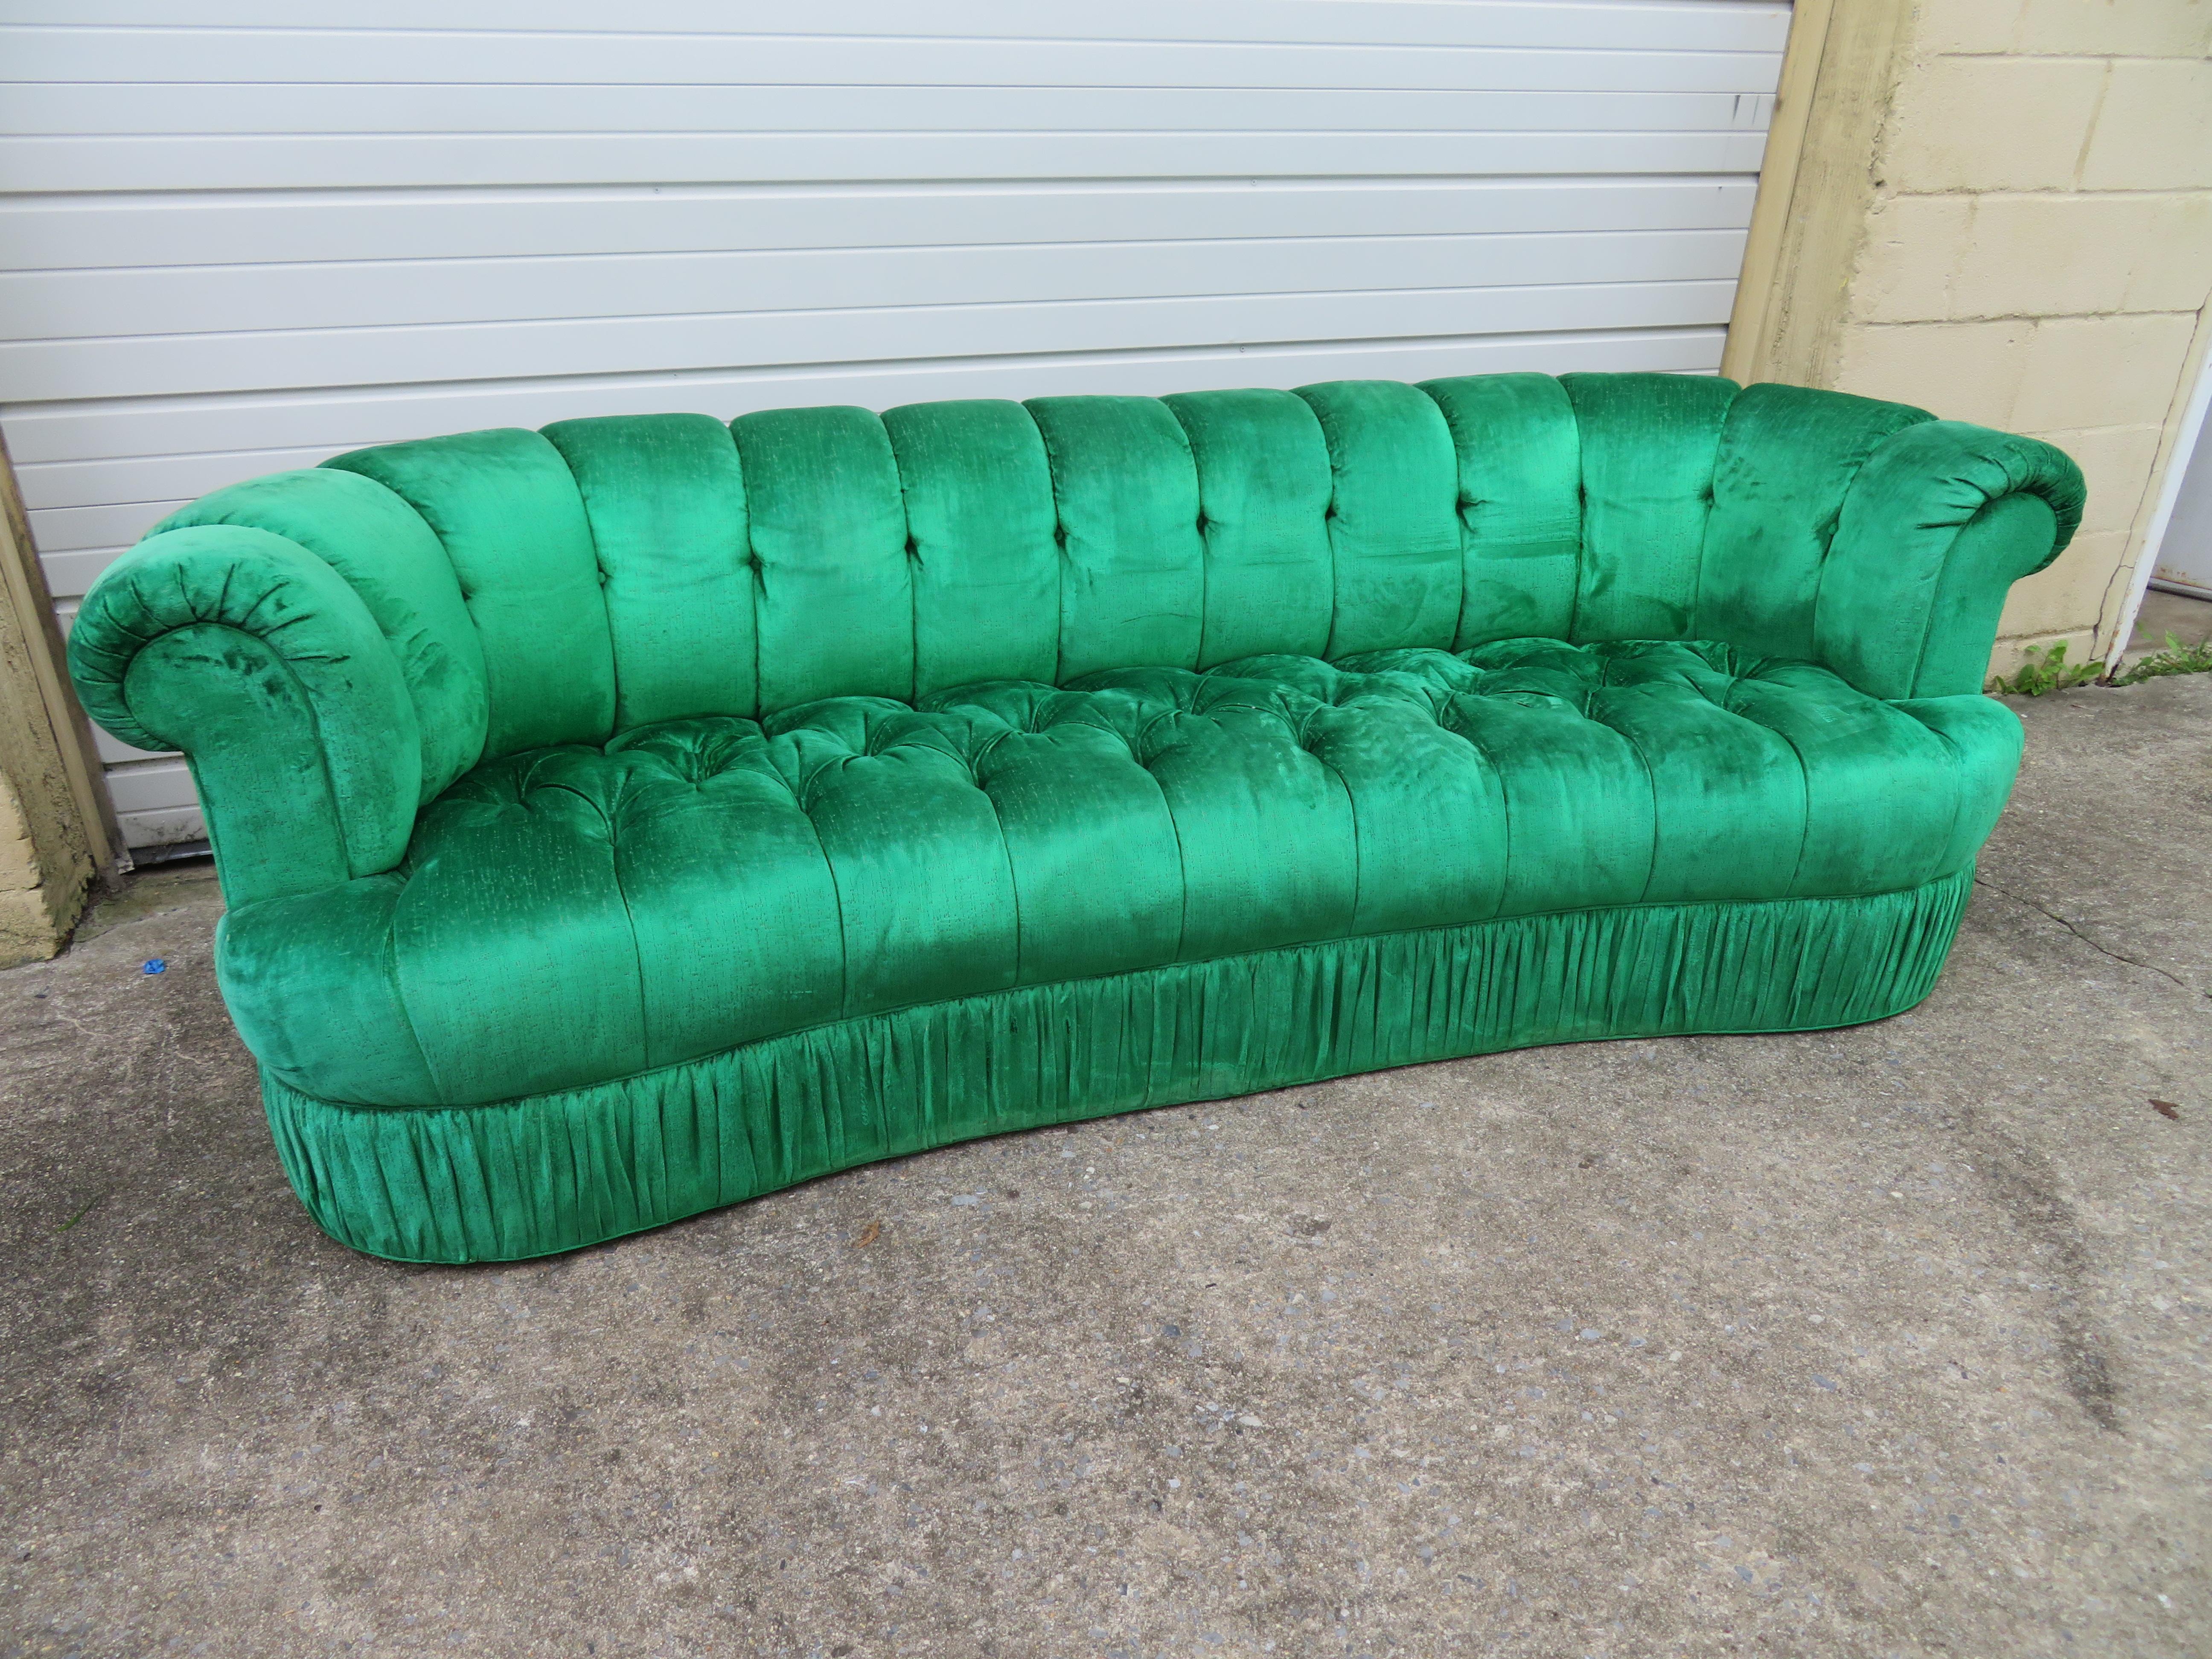 Spektakuläres Hollywood Regency-Sofa in Nierenform mit Tufting. Dieses Stück ist ein echtes Vintage-Schmuckstück aus den 1970er Jahren, gepolstert mit einem wunderschönen smaragdgrünen Samt. Der Stoff ist immer noch in fabelhaftem Zustand und ist so